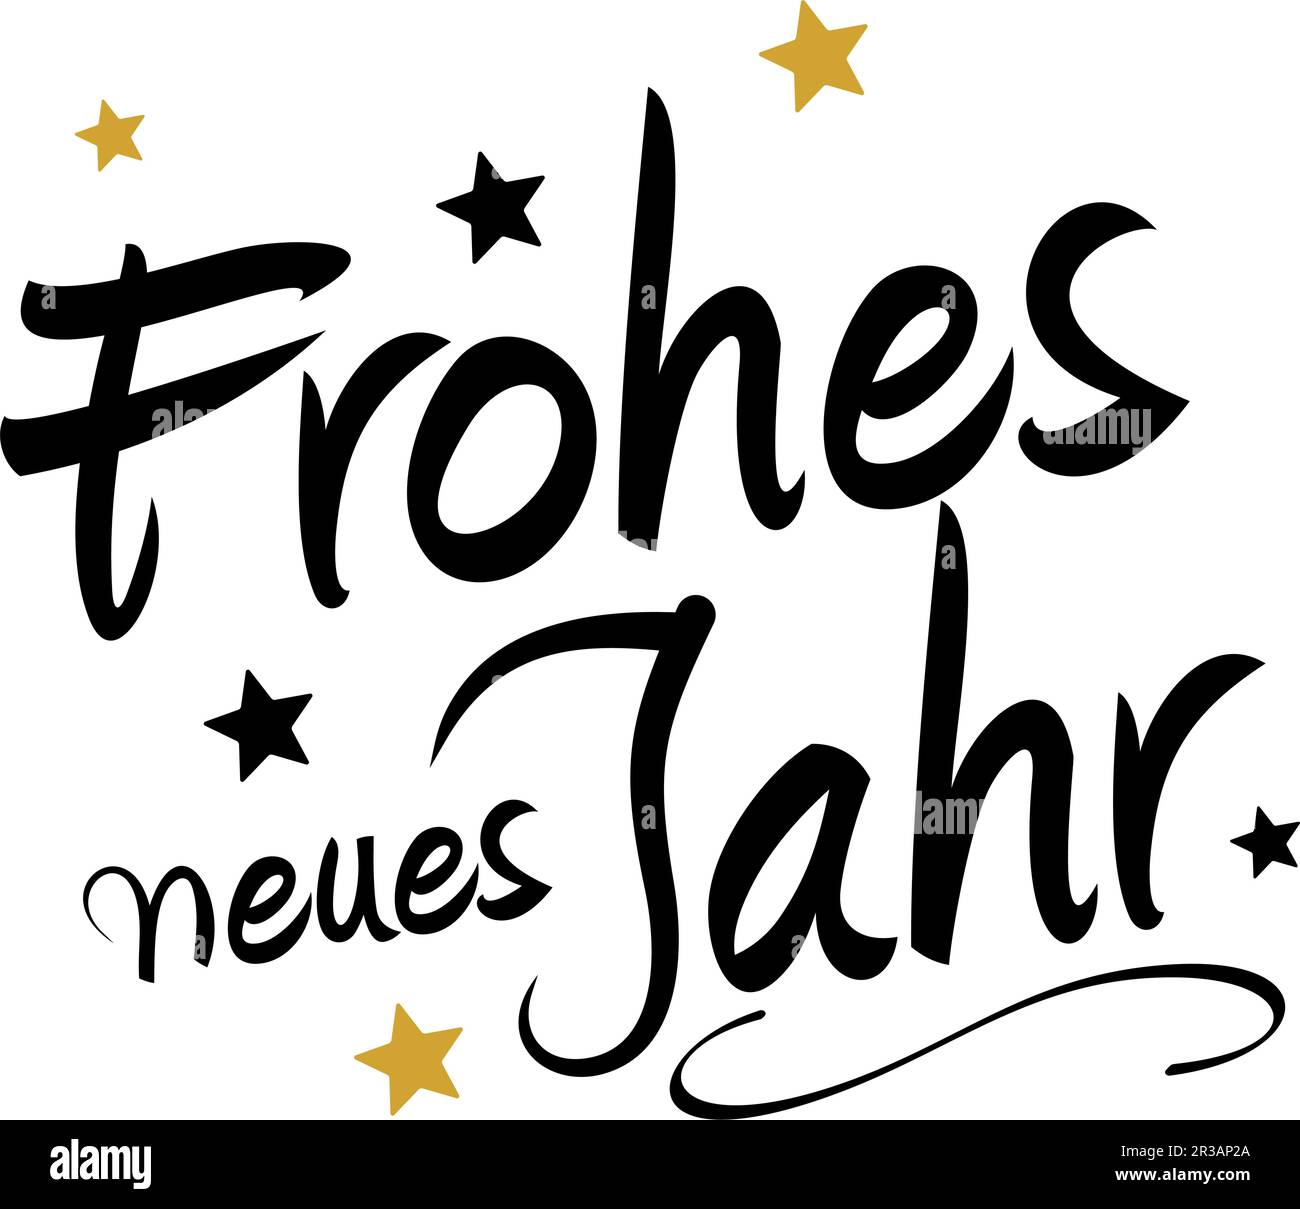 Bonne année en allemand. Lettres calligraphiques noires et dorées à la main. Dos isolé. Frohes Neues Jahr est heureux nouvel an en anglais. Illustration de Vecteur